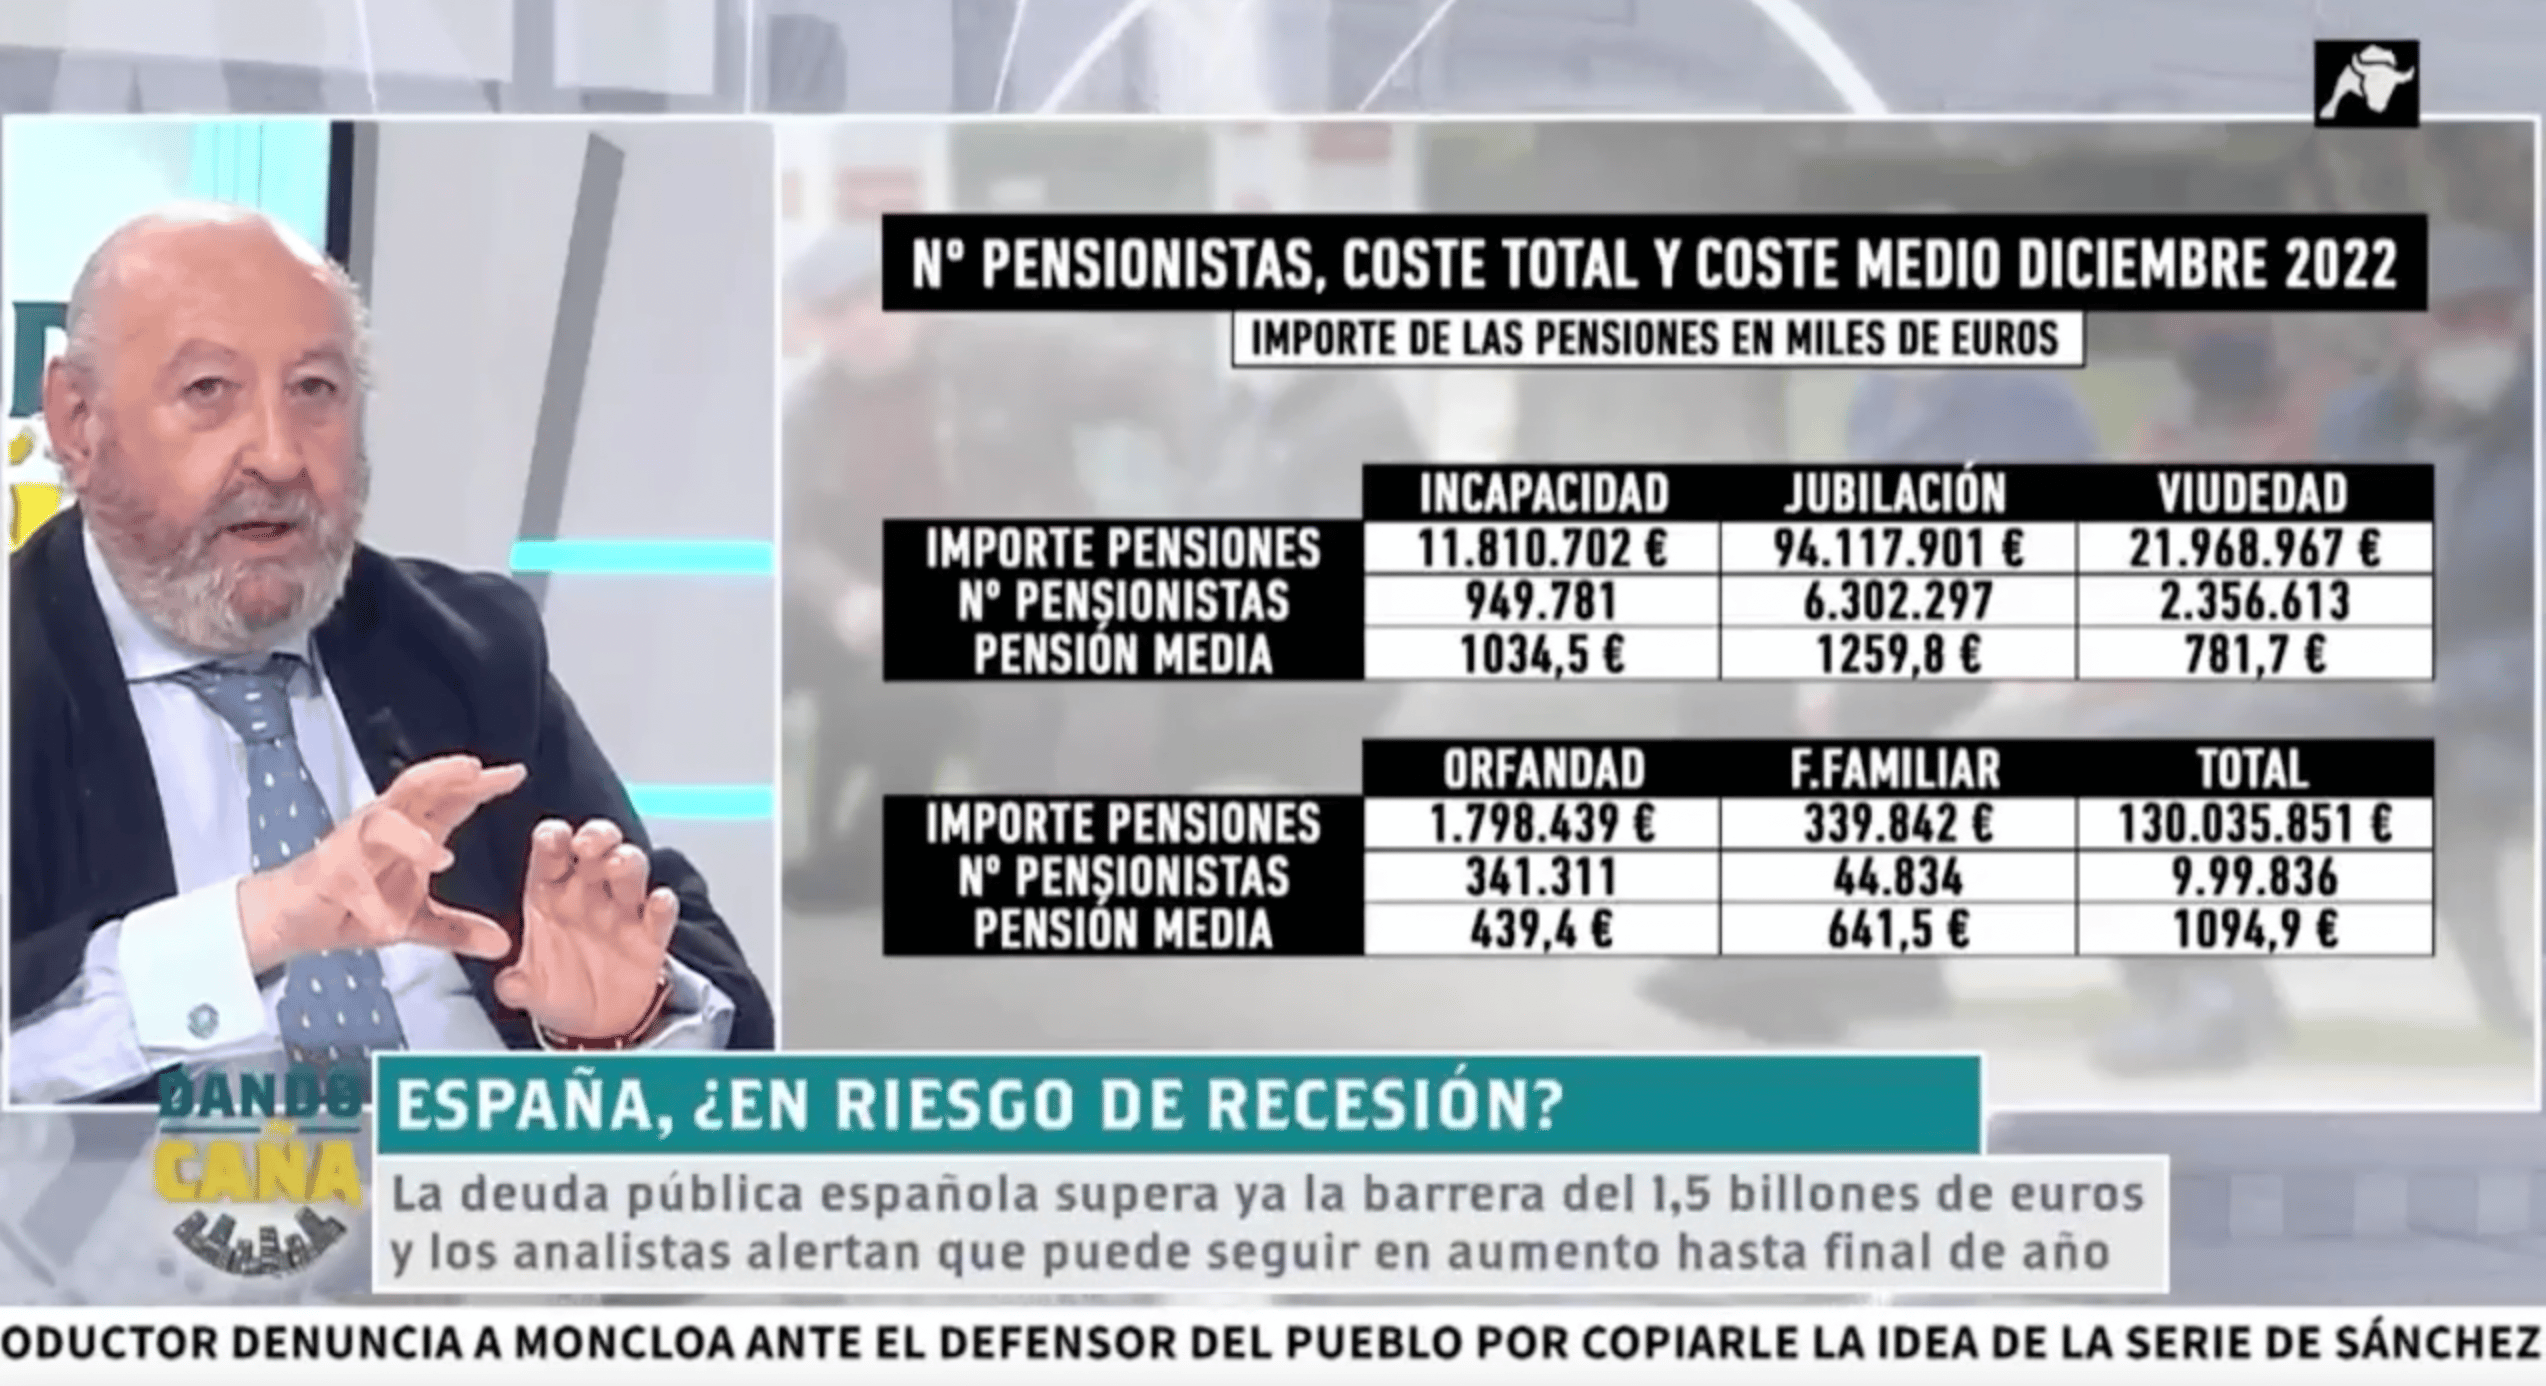 José Ramón Riera nos desvela los datos de las pensiones y el coste medio de diciembre 2022